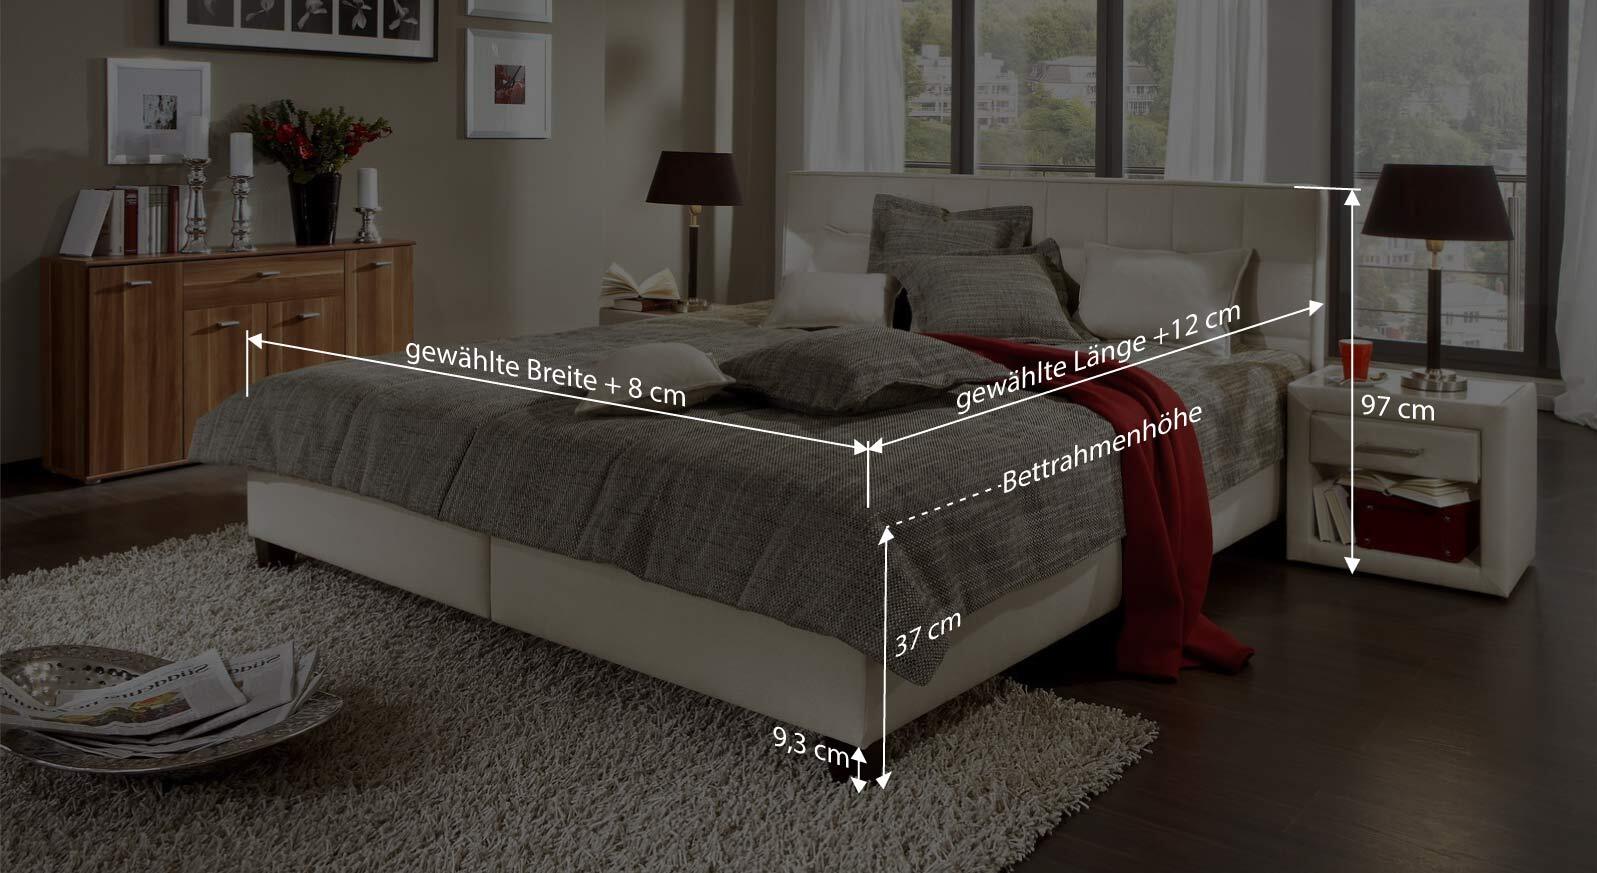 Bett mit stoffbezug - Die preiswertesten Bett mit stoffbezug ausführlich analysiert!